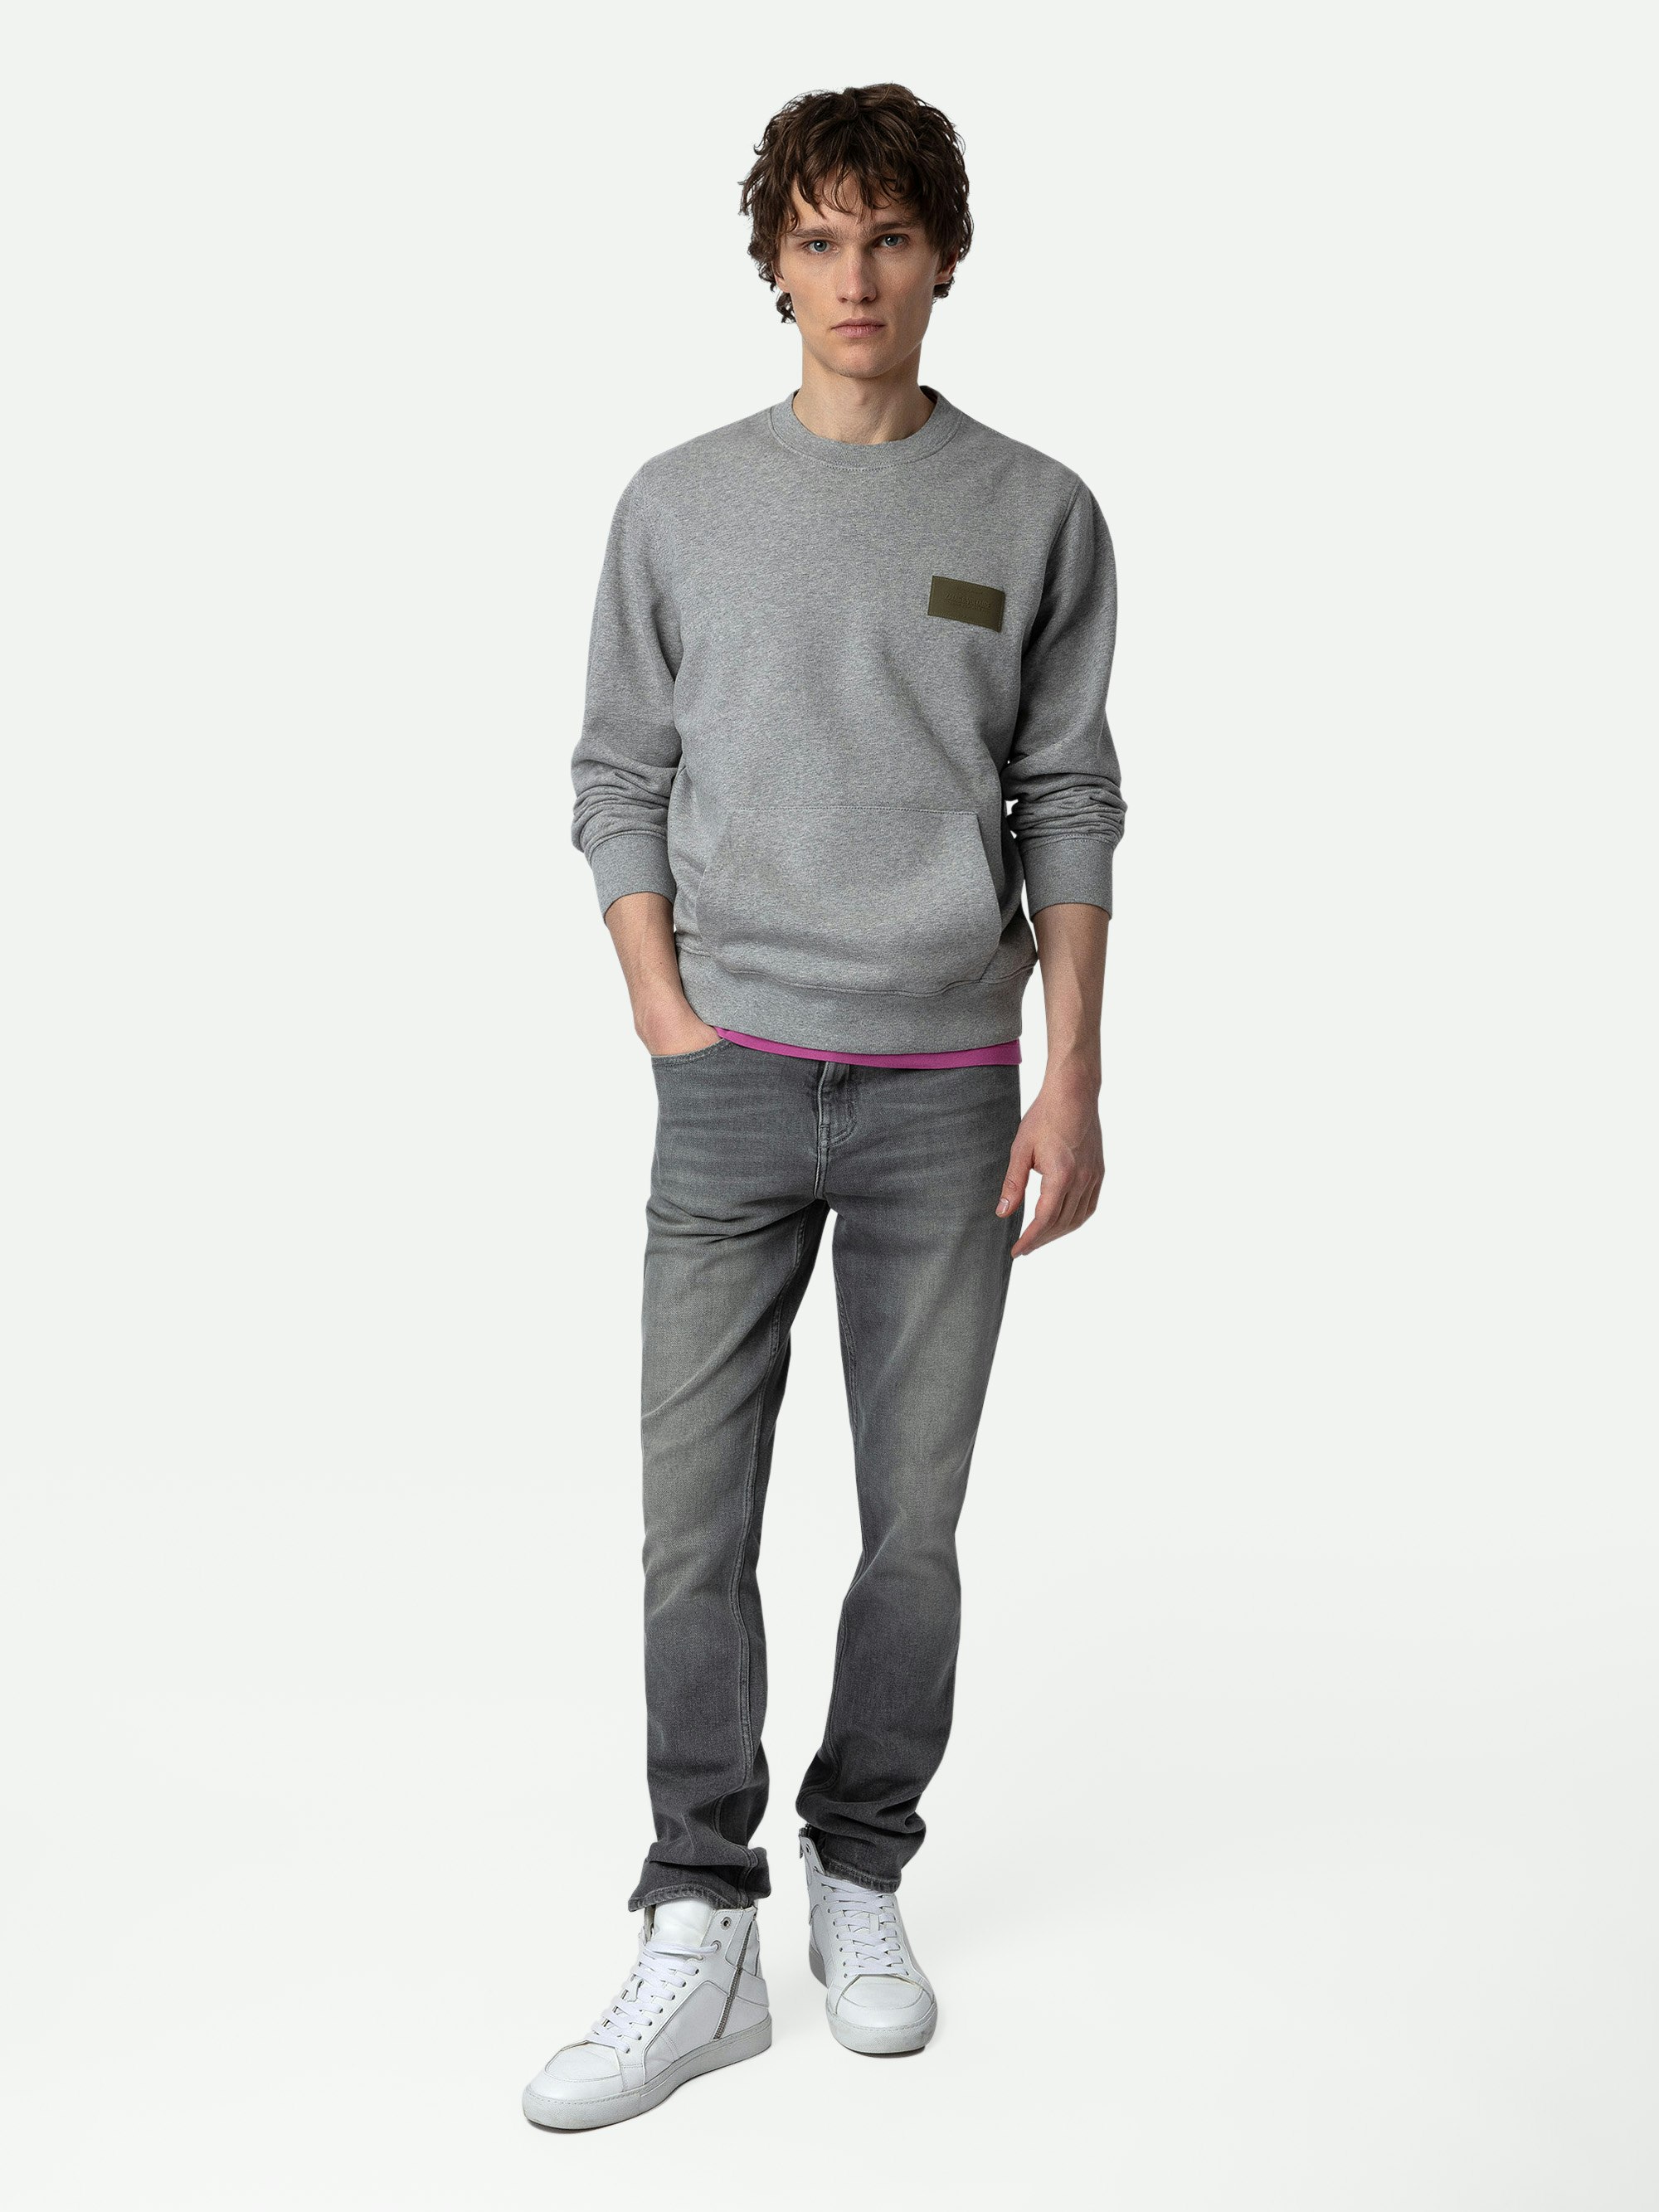 Sweatshirt Aime - Sweatshirt gris chiné à col rond et manches longues orné d'un patch à la poitrine.